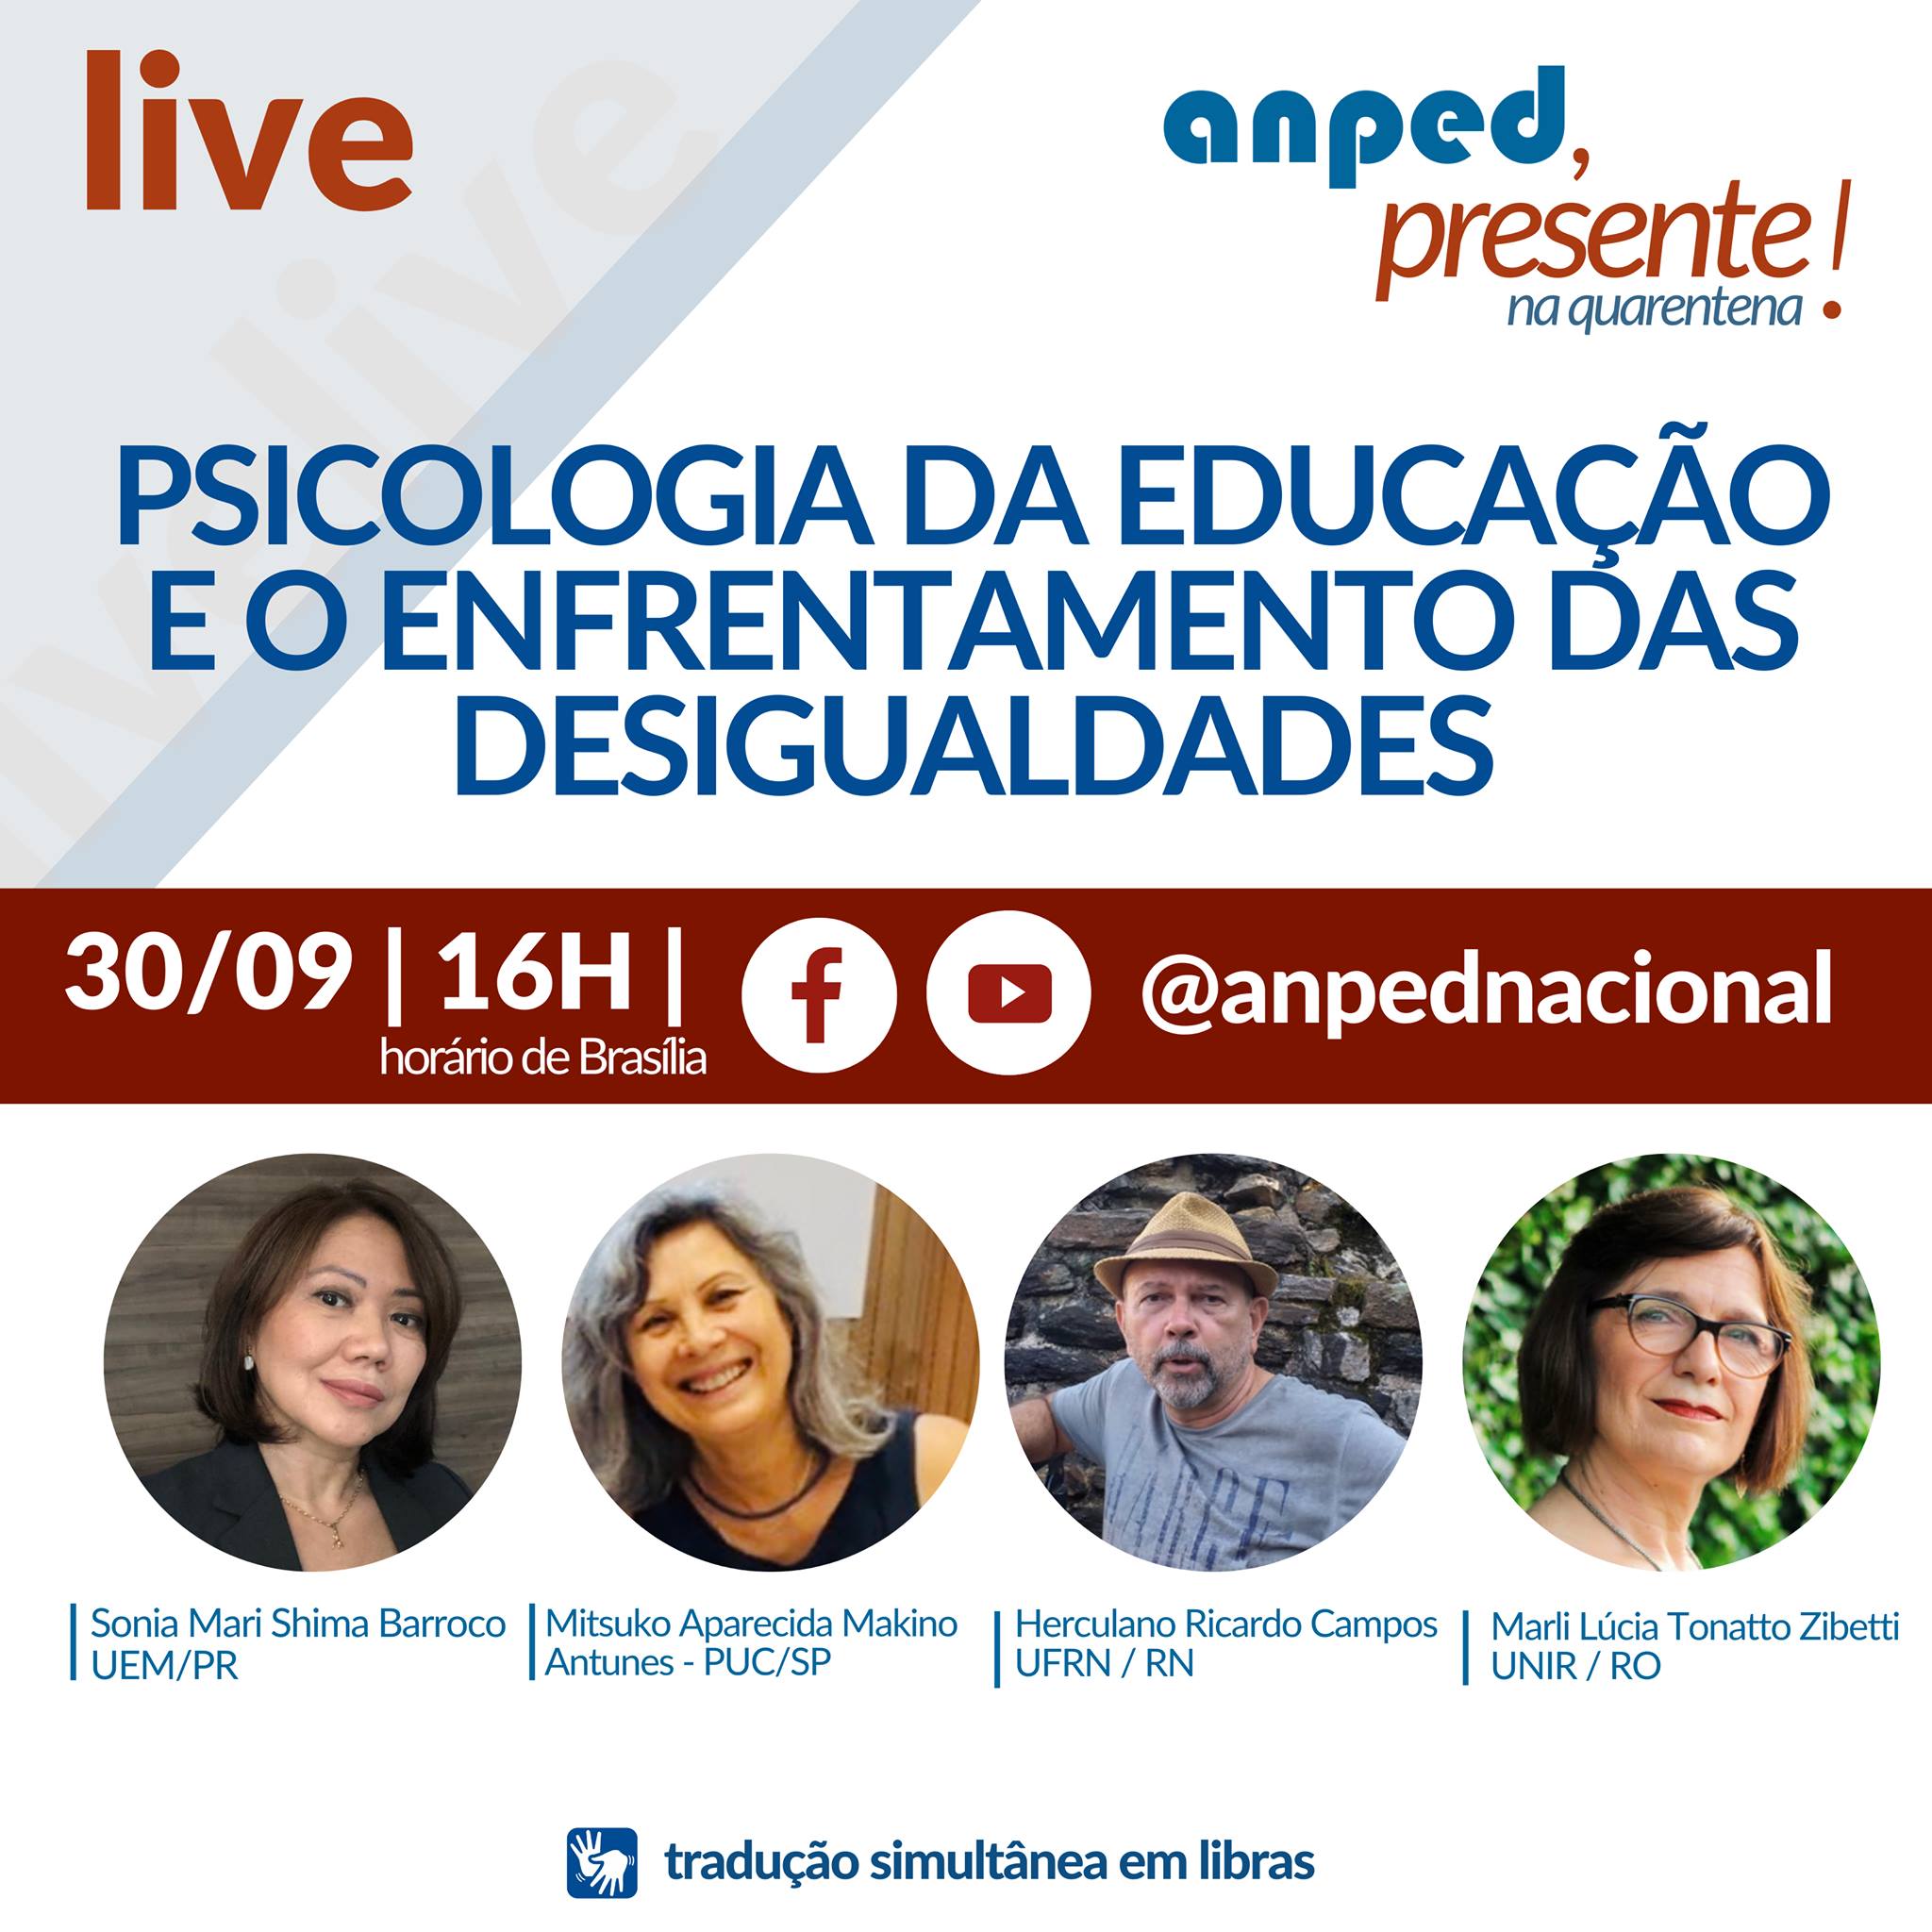 Anped promove live “Psicologia da educação e o enfrentamento das desigualdades”